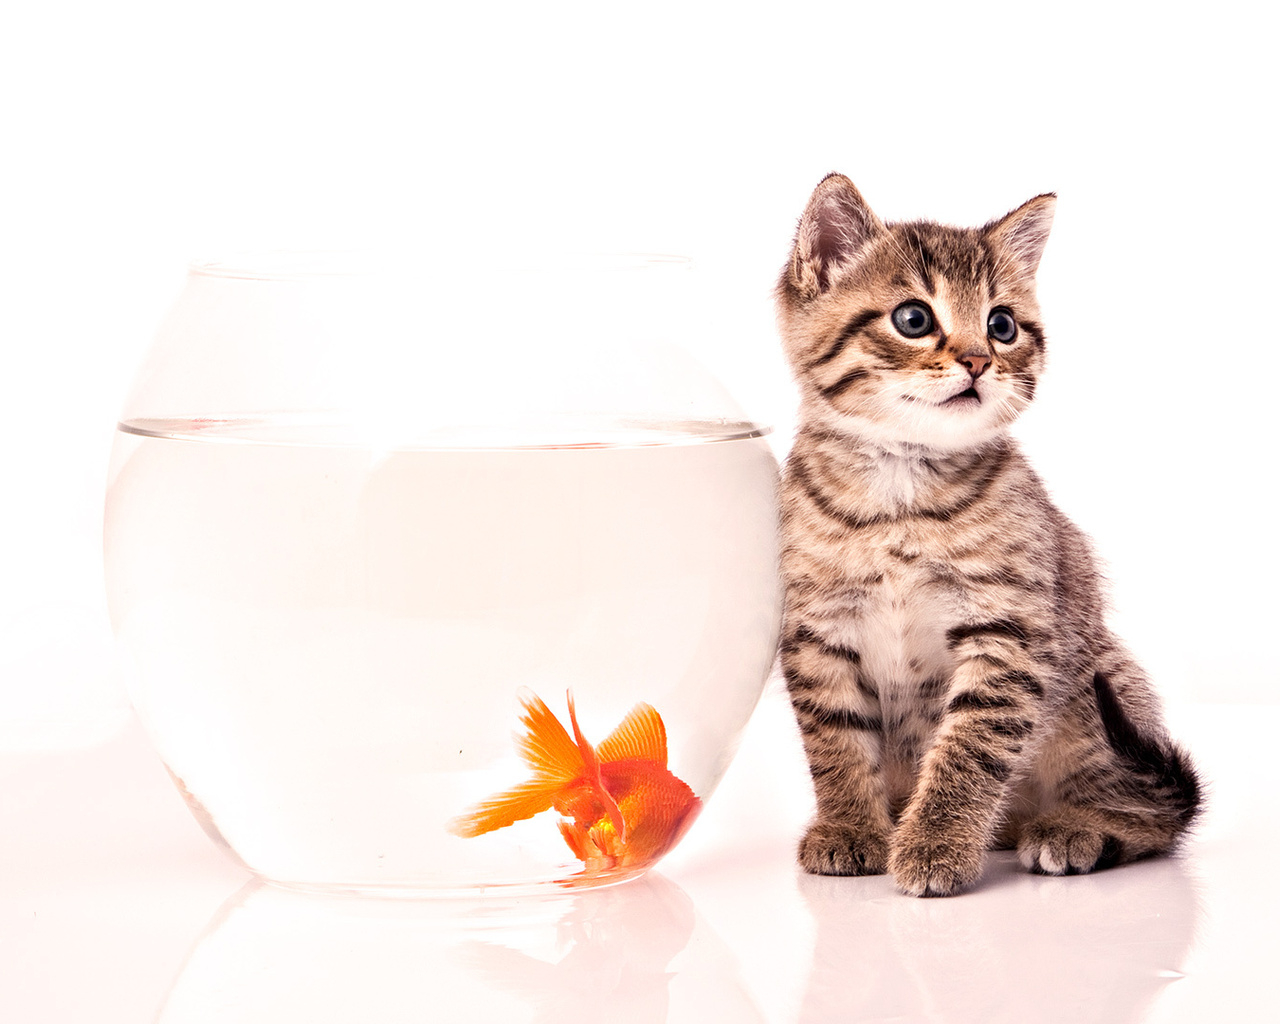 Котенок и золотая рыбка